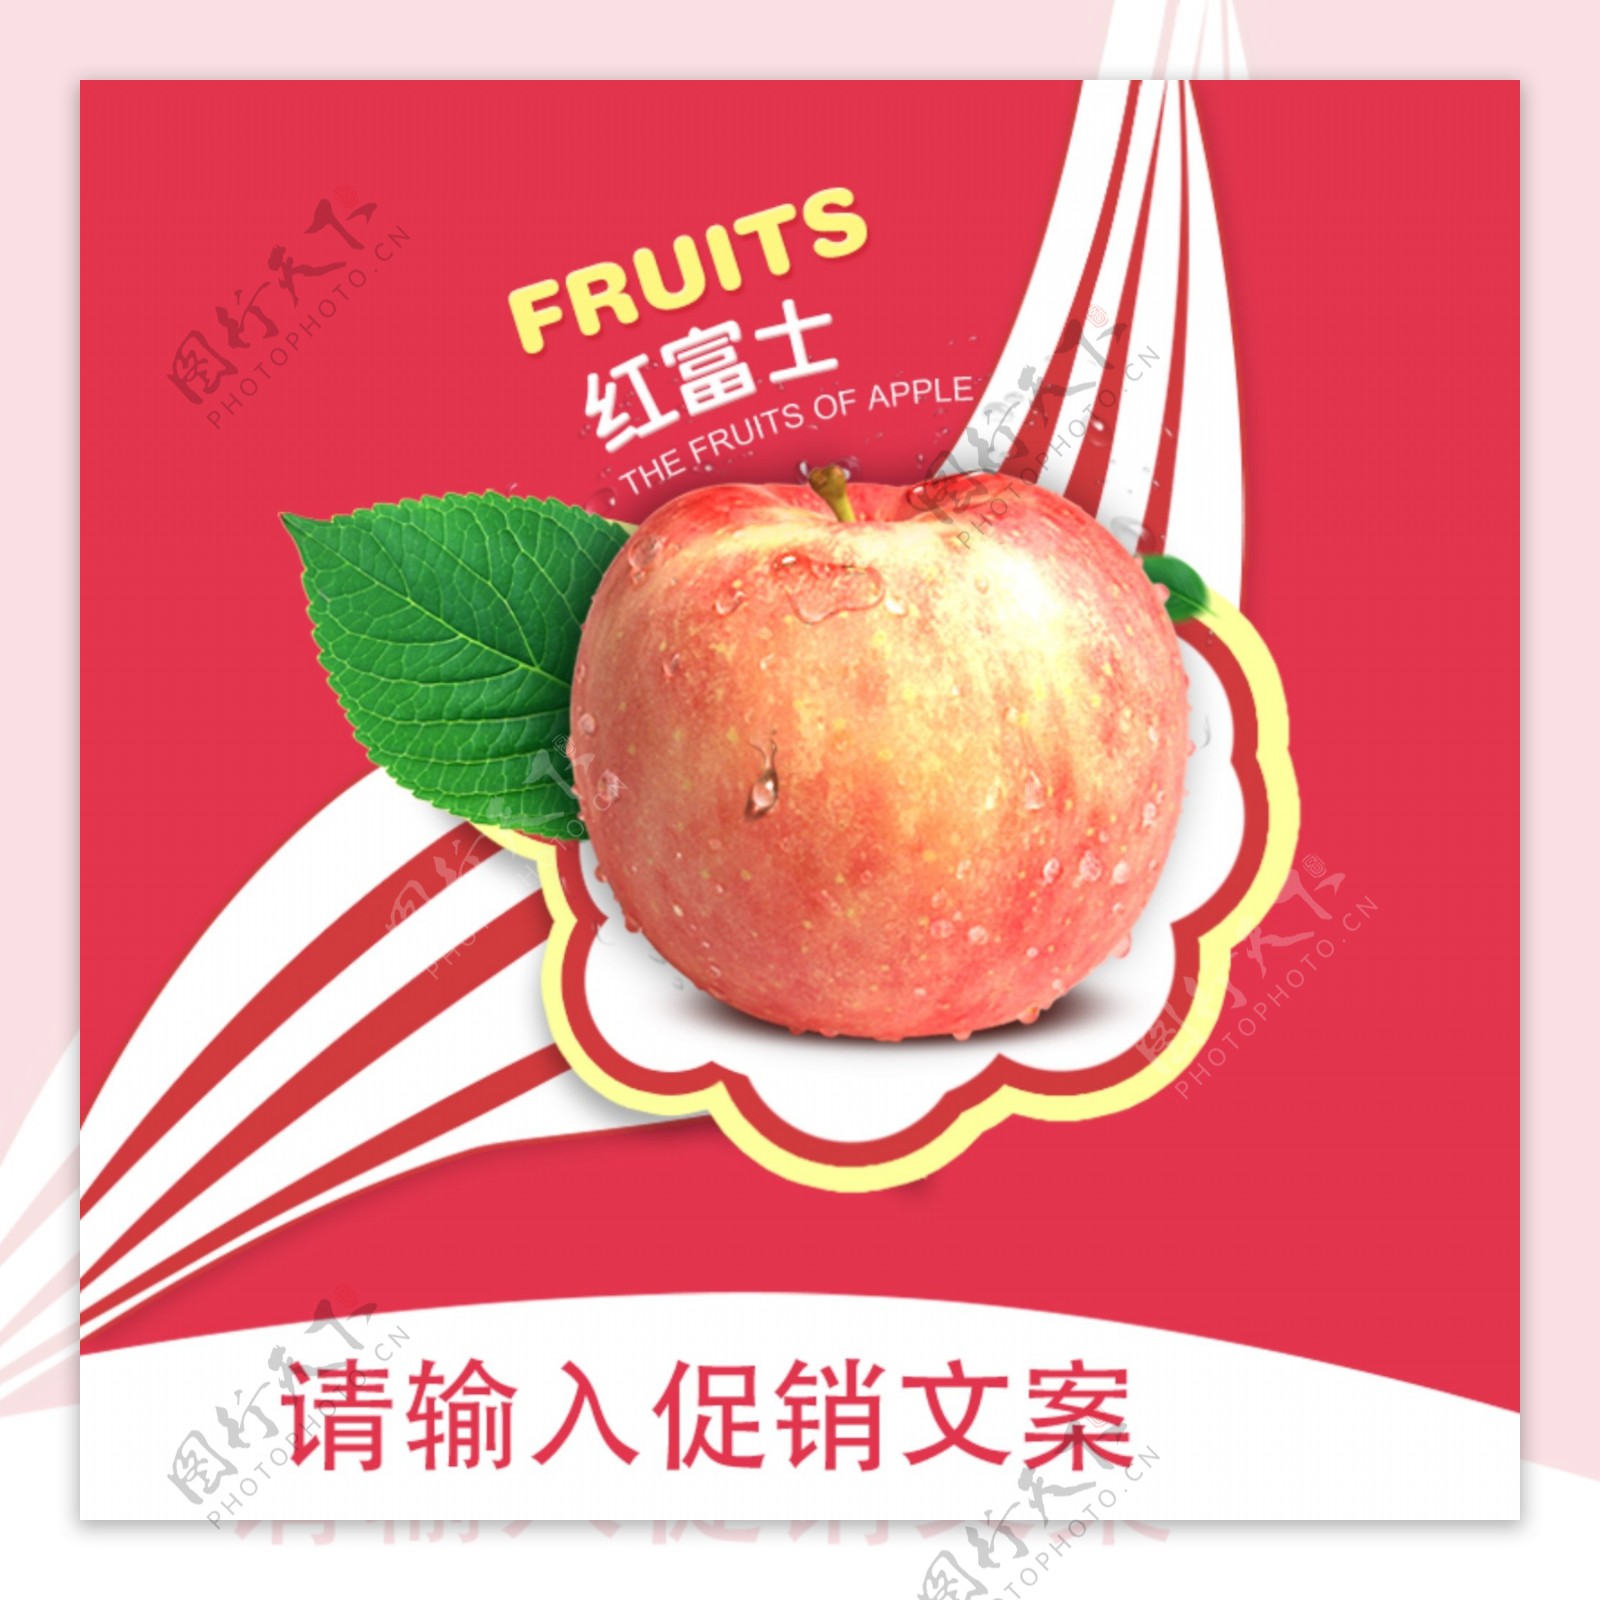 水果苹果直通车主图钻展详情海报